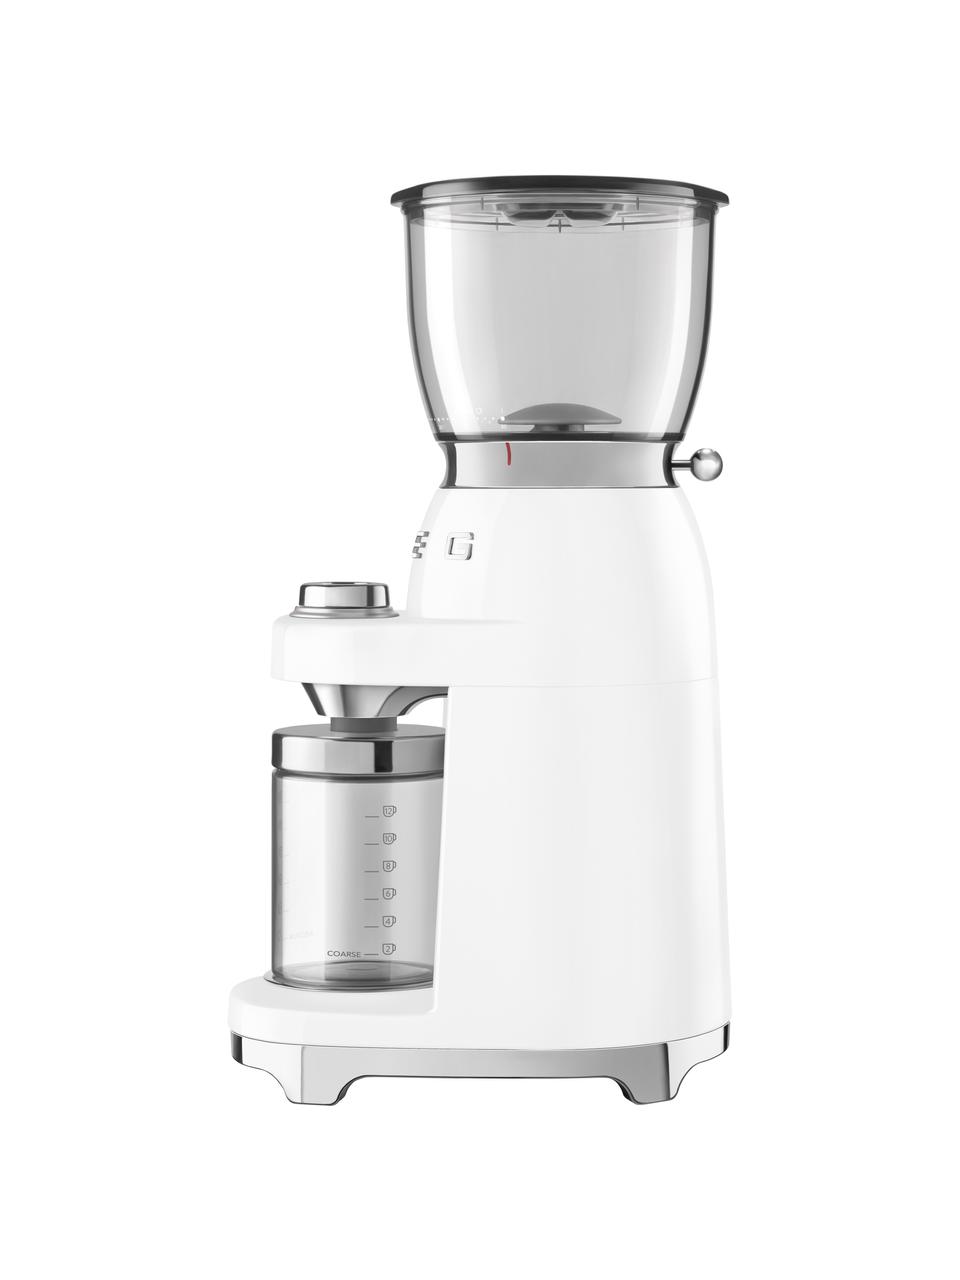 Elektrische Kaffeemühle 50's Style in Weiß, Gehäuse: Metall, lackiert, Deckel: Tritan™, BPA-frei, Weiß, glänzend, B 17 x H 46 cm